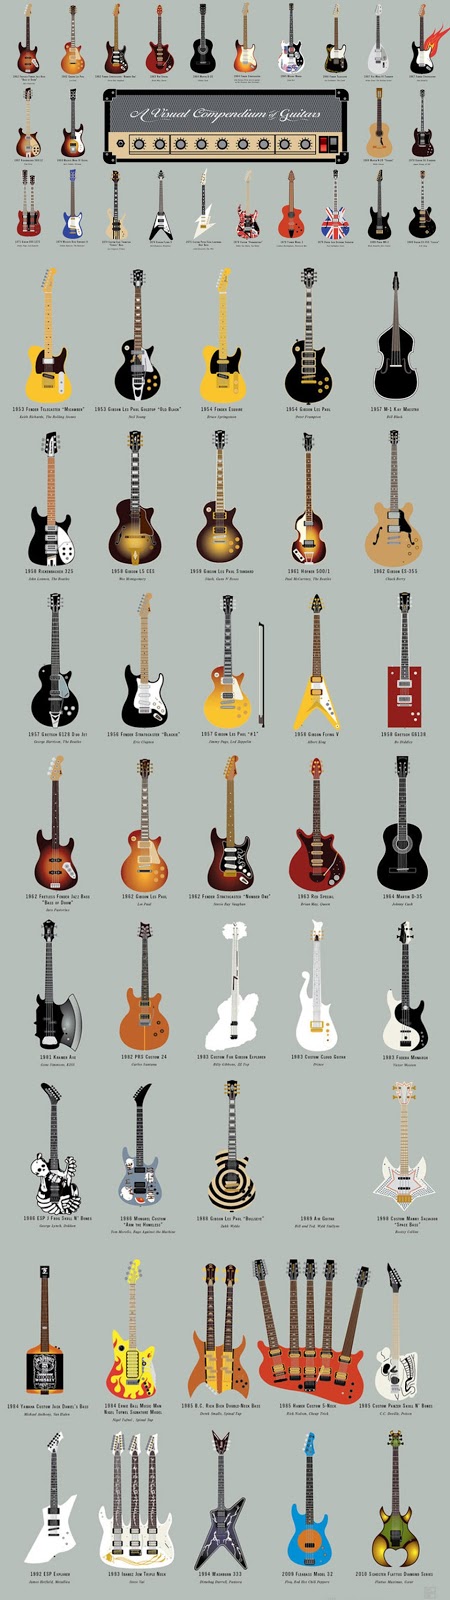  A Visual Compendium of Guitars - Infographic